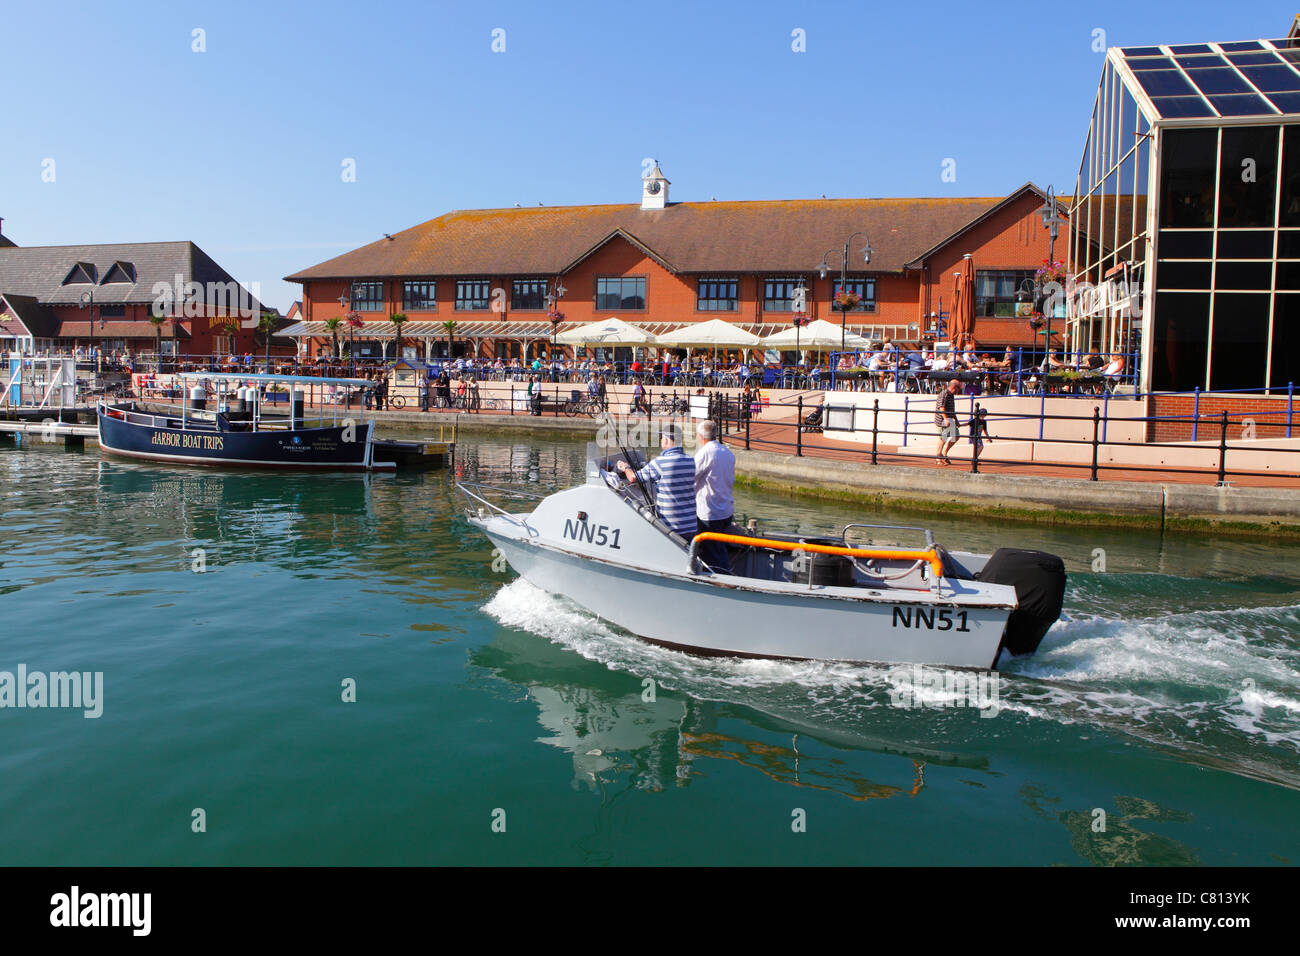 Bateau passant devant les cafés du bord de mer de Lower Quayside, Sovereign Harbour, Eastbourne, East Sussex, Angleterre GB Banque D'Images